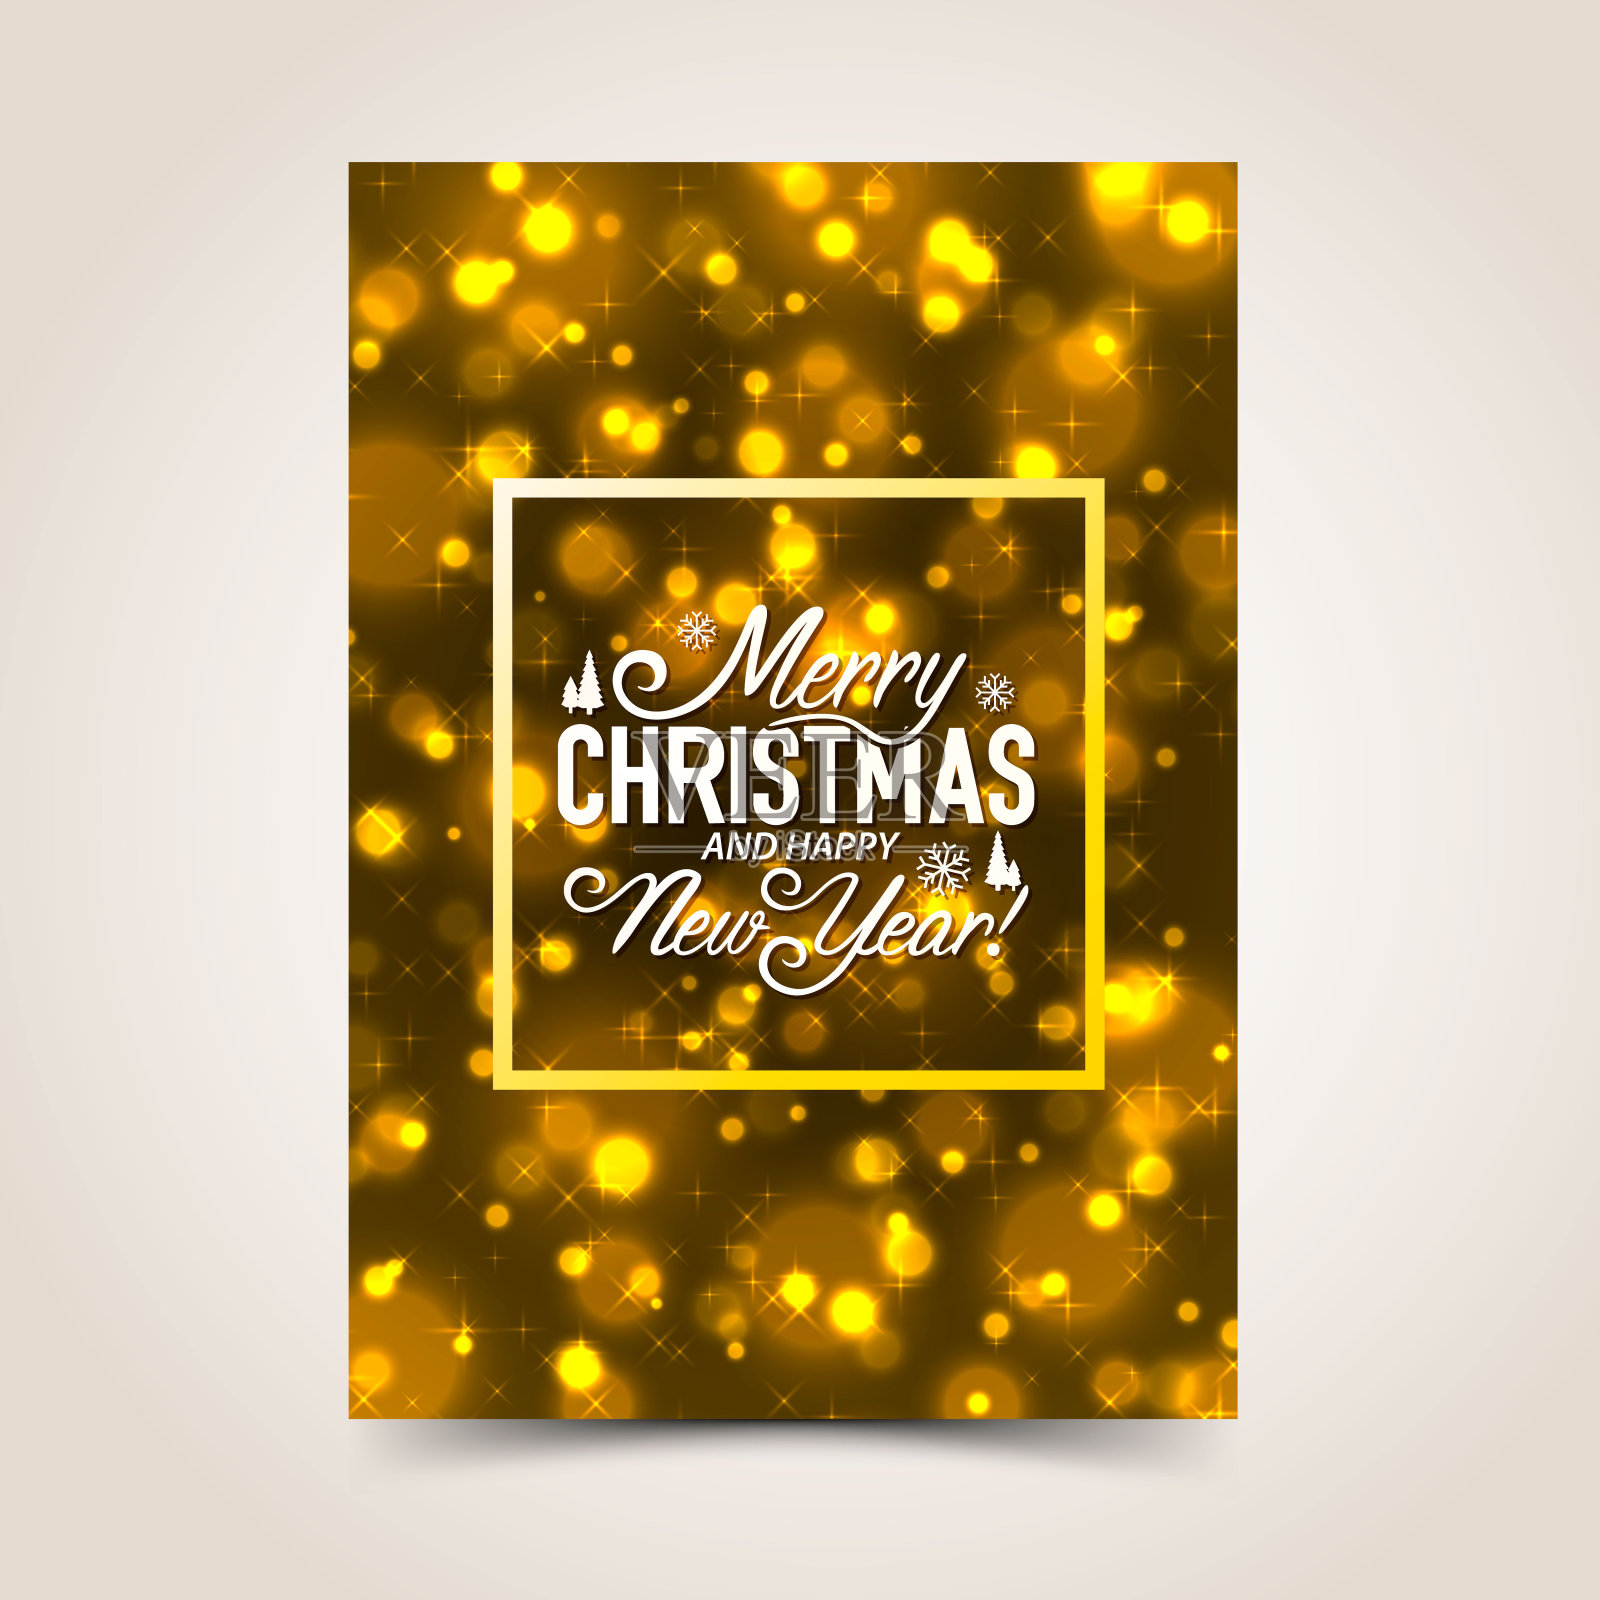 圣诞快乐设计背景封面模糊灯光。矢量图设计模板素材